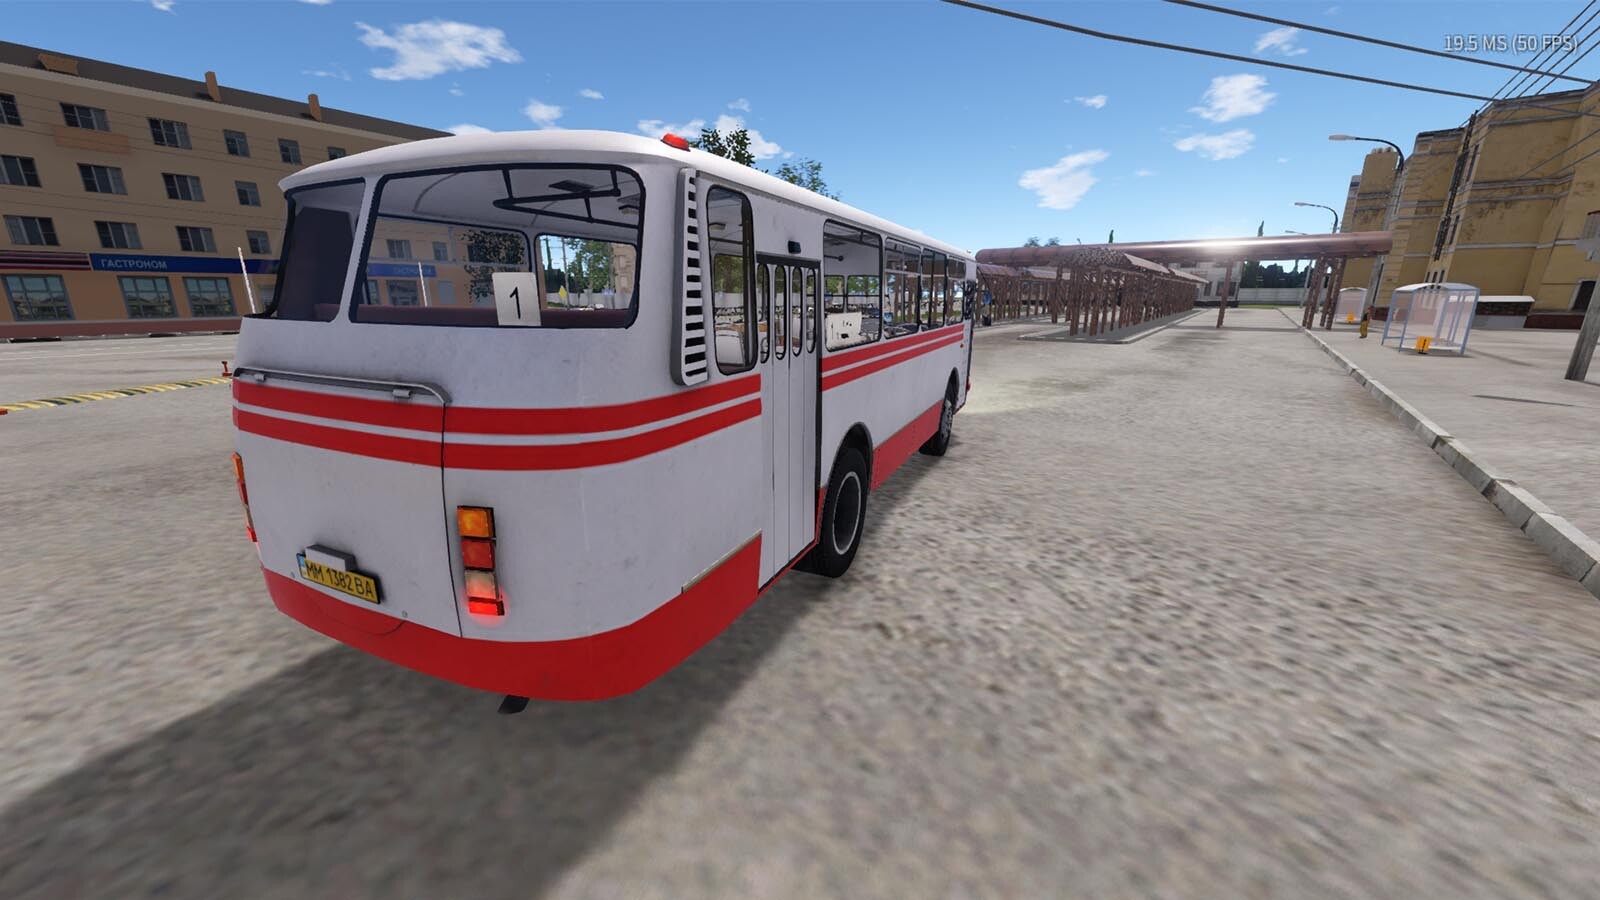 bus simulator 18 trainer